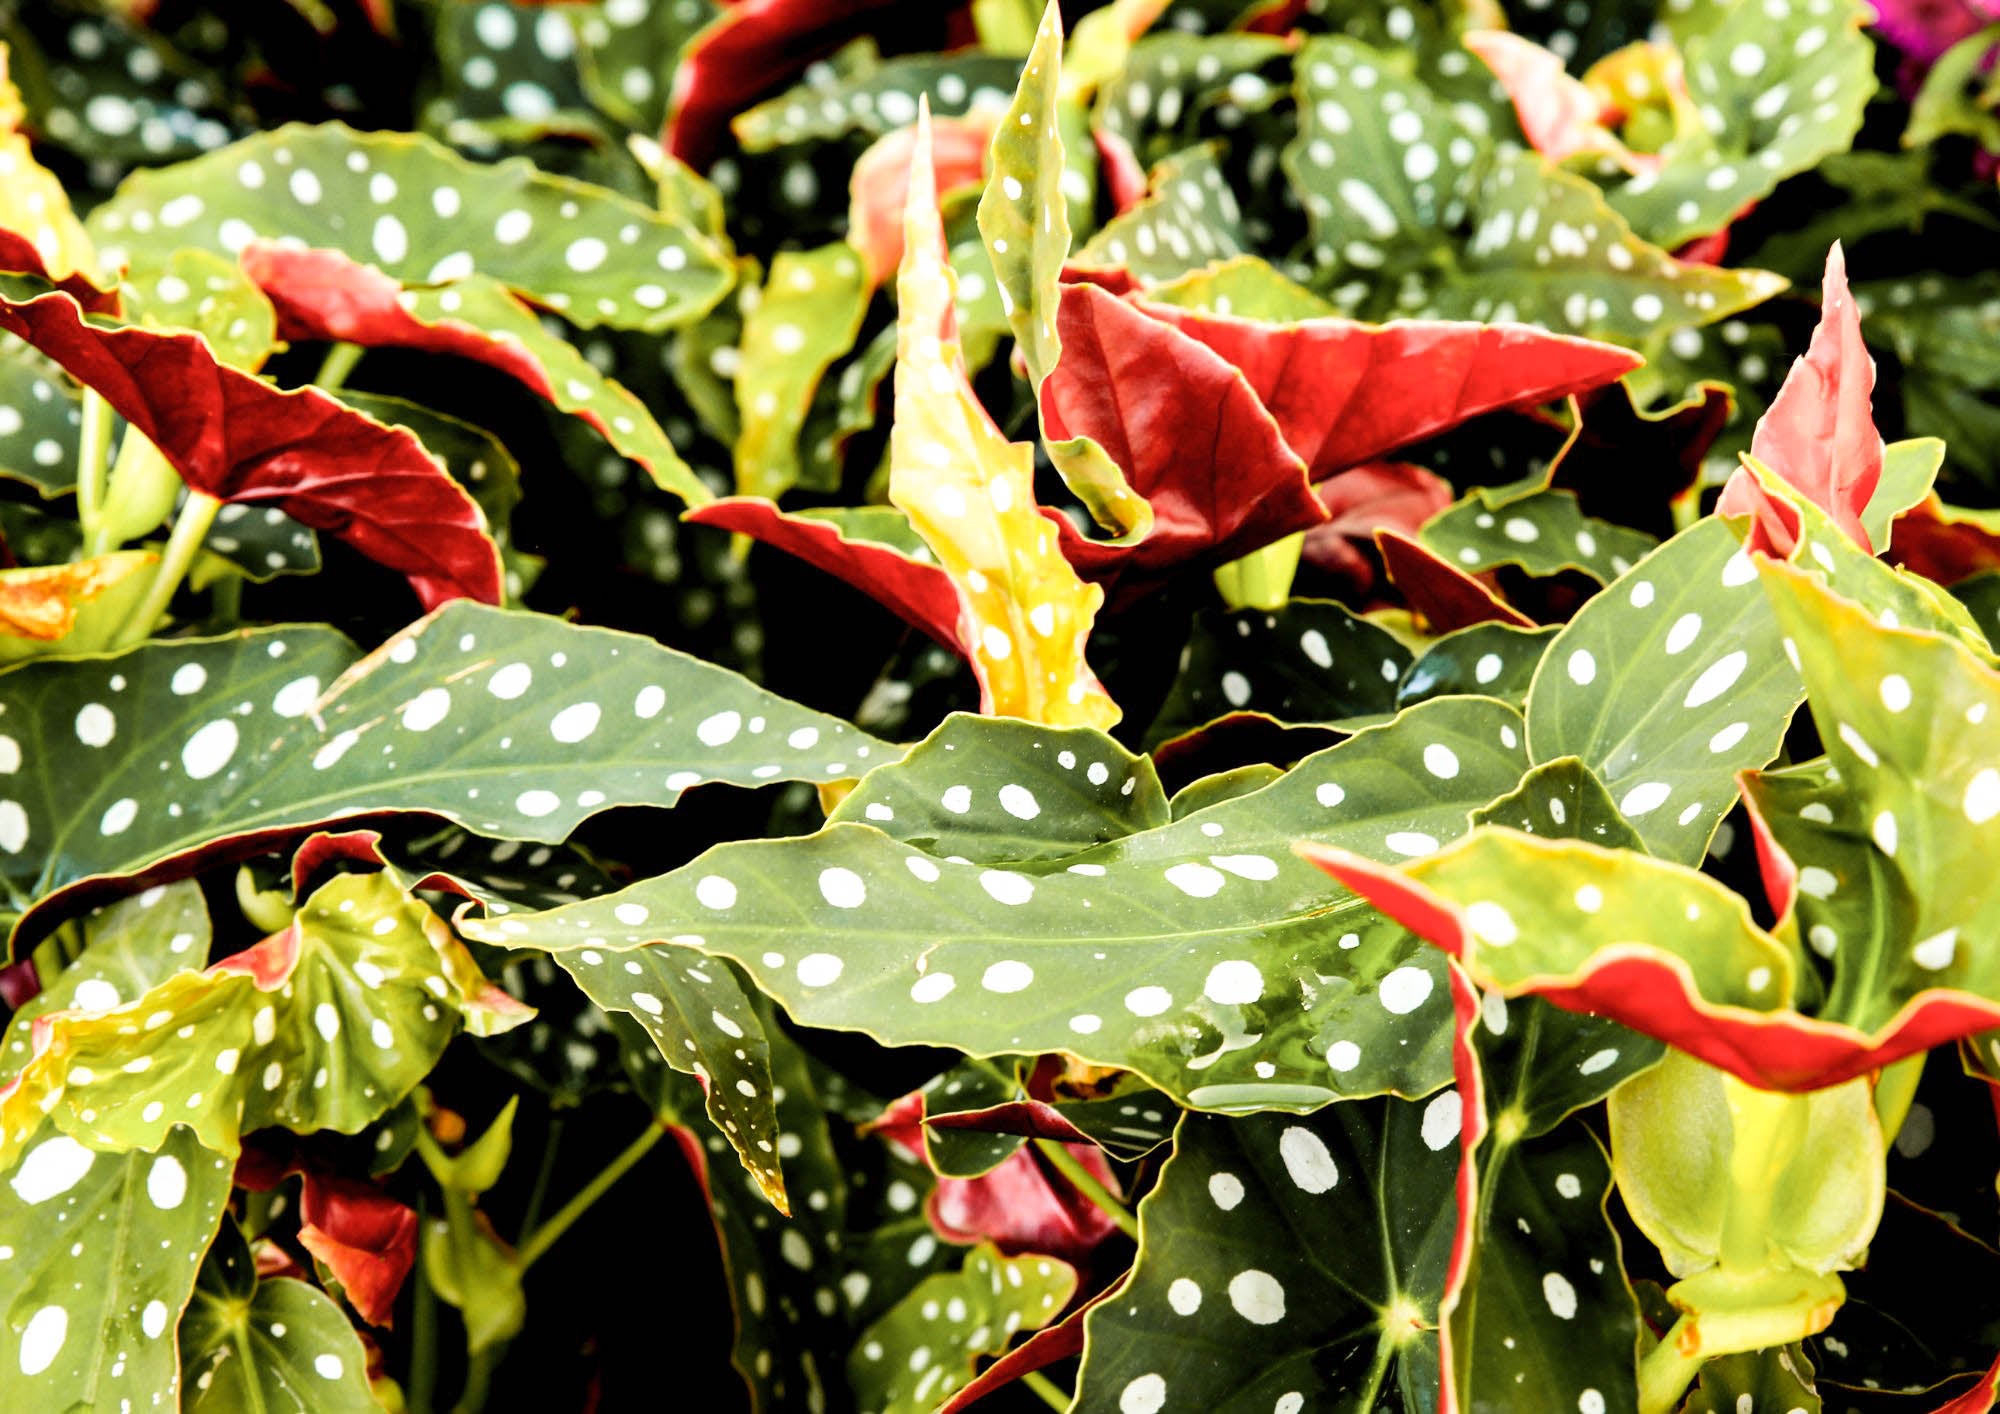 Polka dot begonia plant grown in water